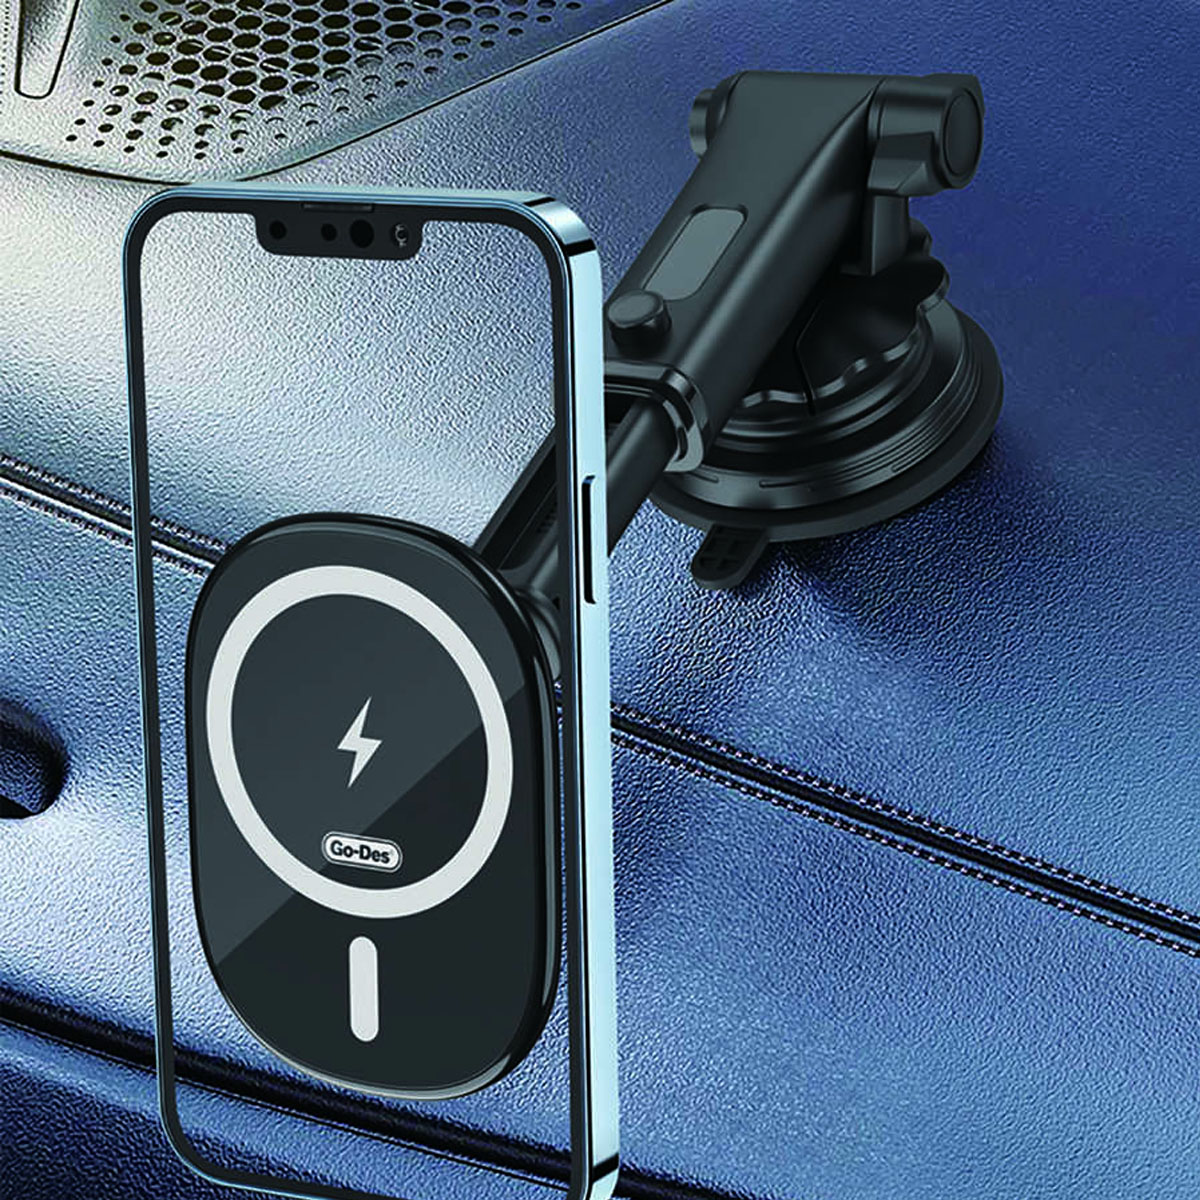 Автомобильный магнитный держатель GO-DES GD-WL398 для смартфона, на приборную панель, решетку воздуховода, 15W, беспроводная зарядка, цвет черный